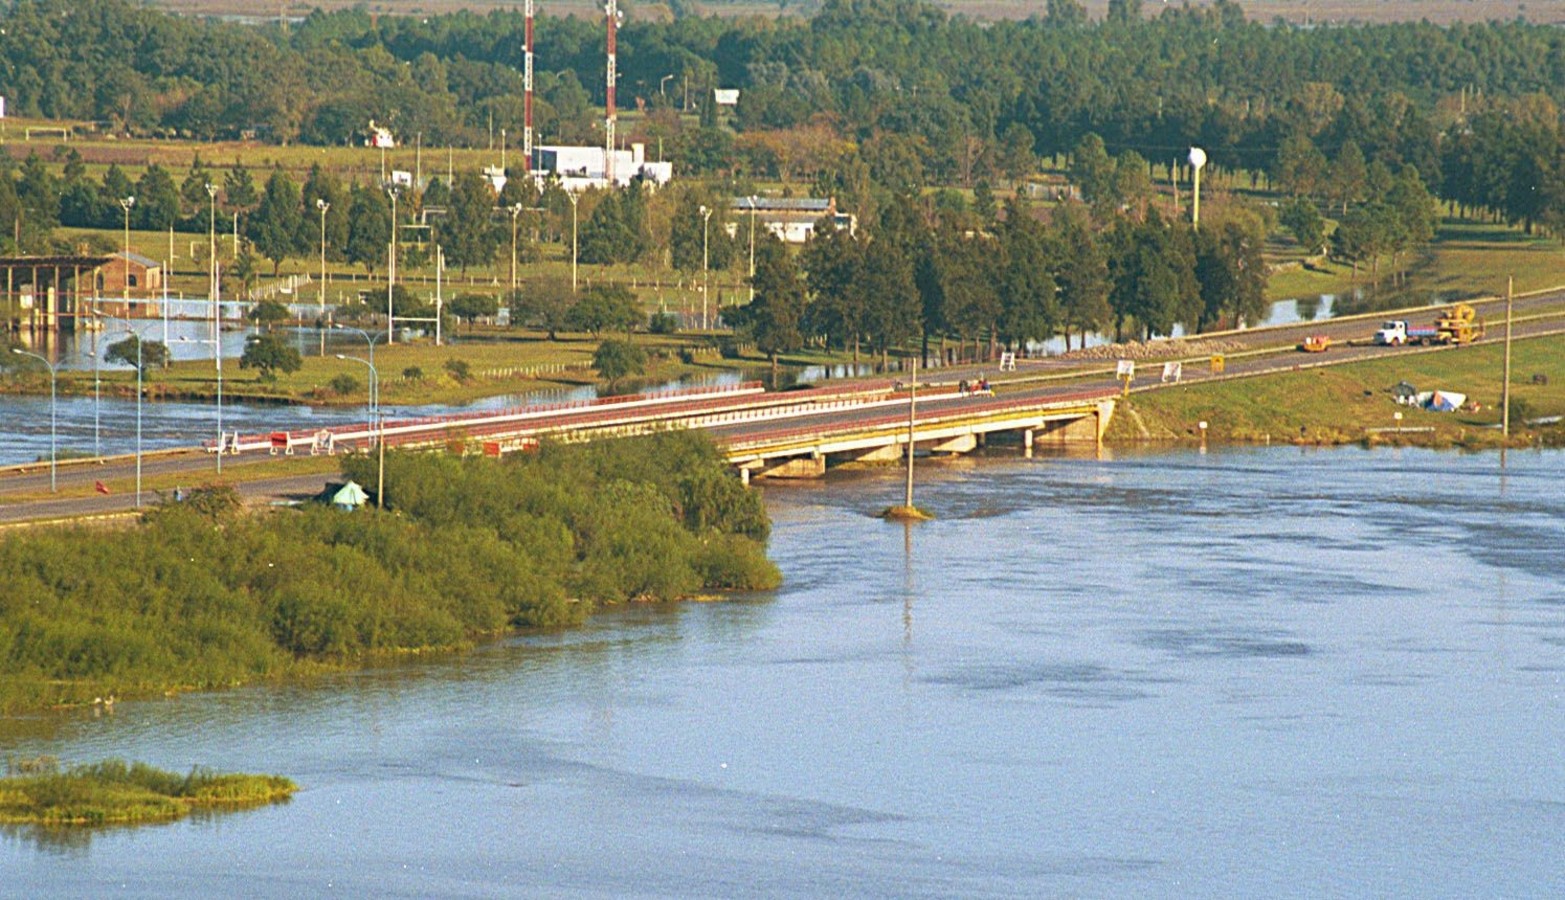 La luz del puente sobre la autopista Santa Fe Rosario. Construido a finales de 1970 fue la primera del país. La luz sobre el río salado era de 150 metros. Luego de 2003, pasó a 525 metros.